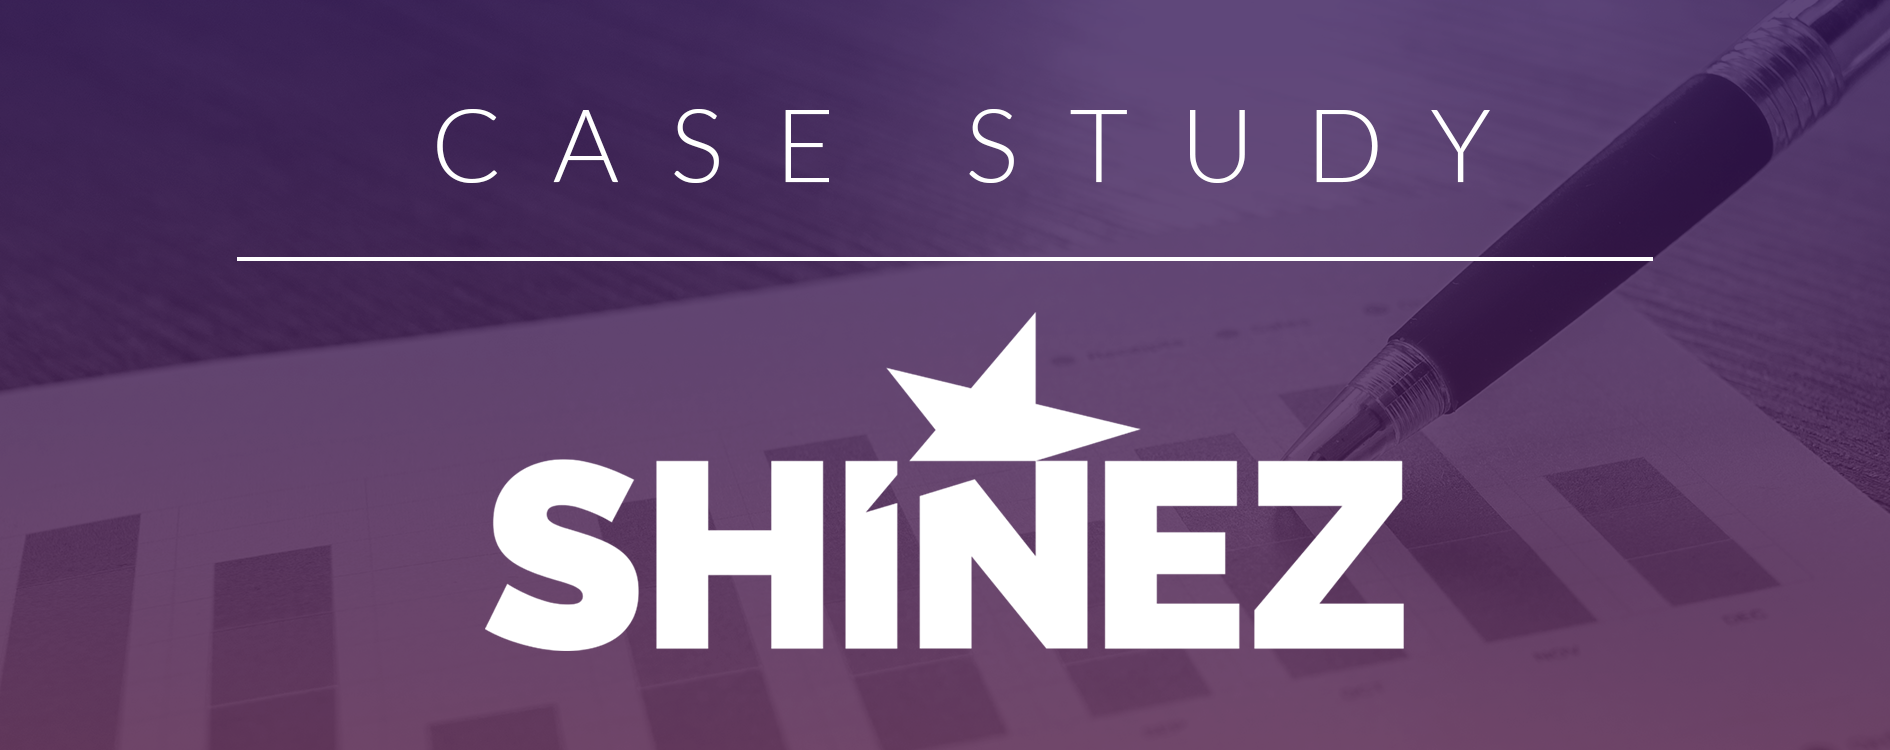 Shinez Case Study Blog Feature